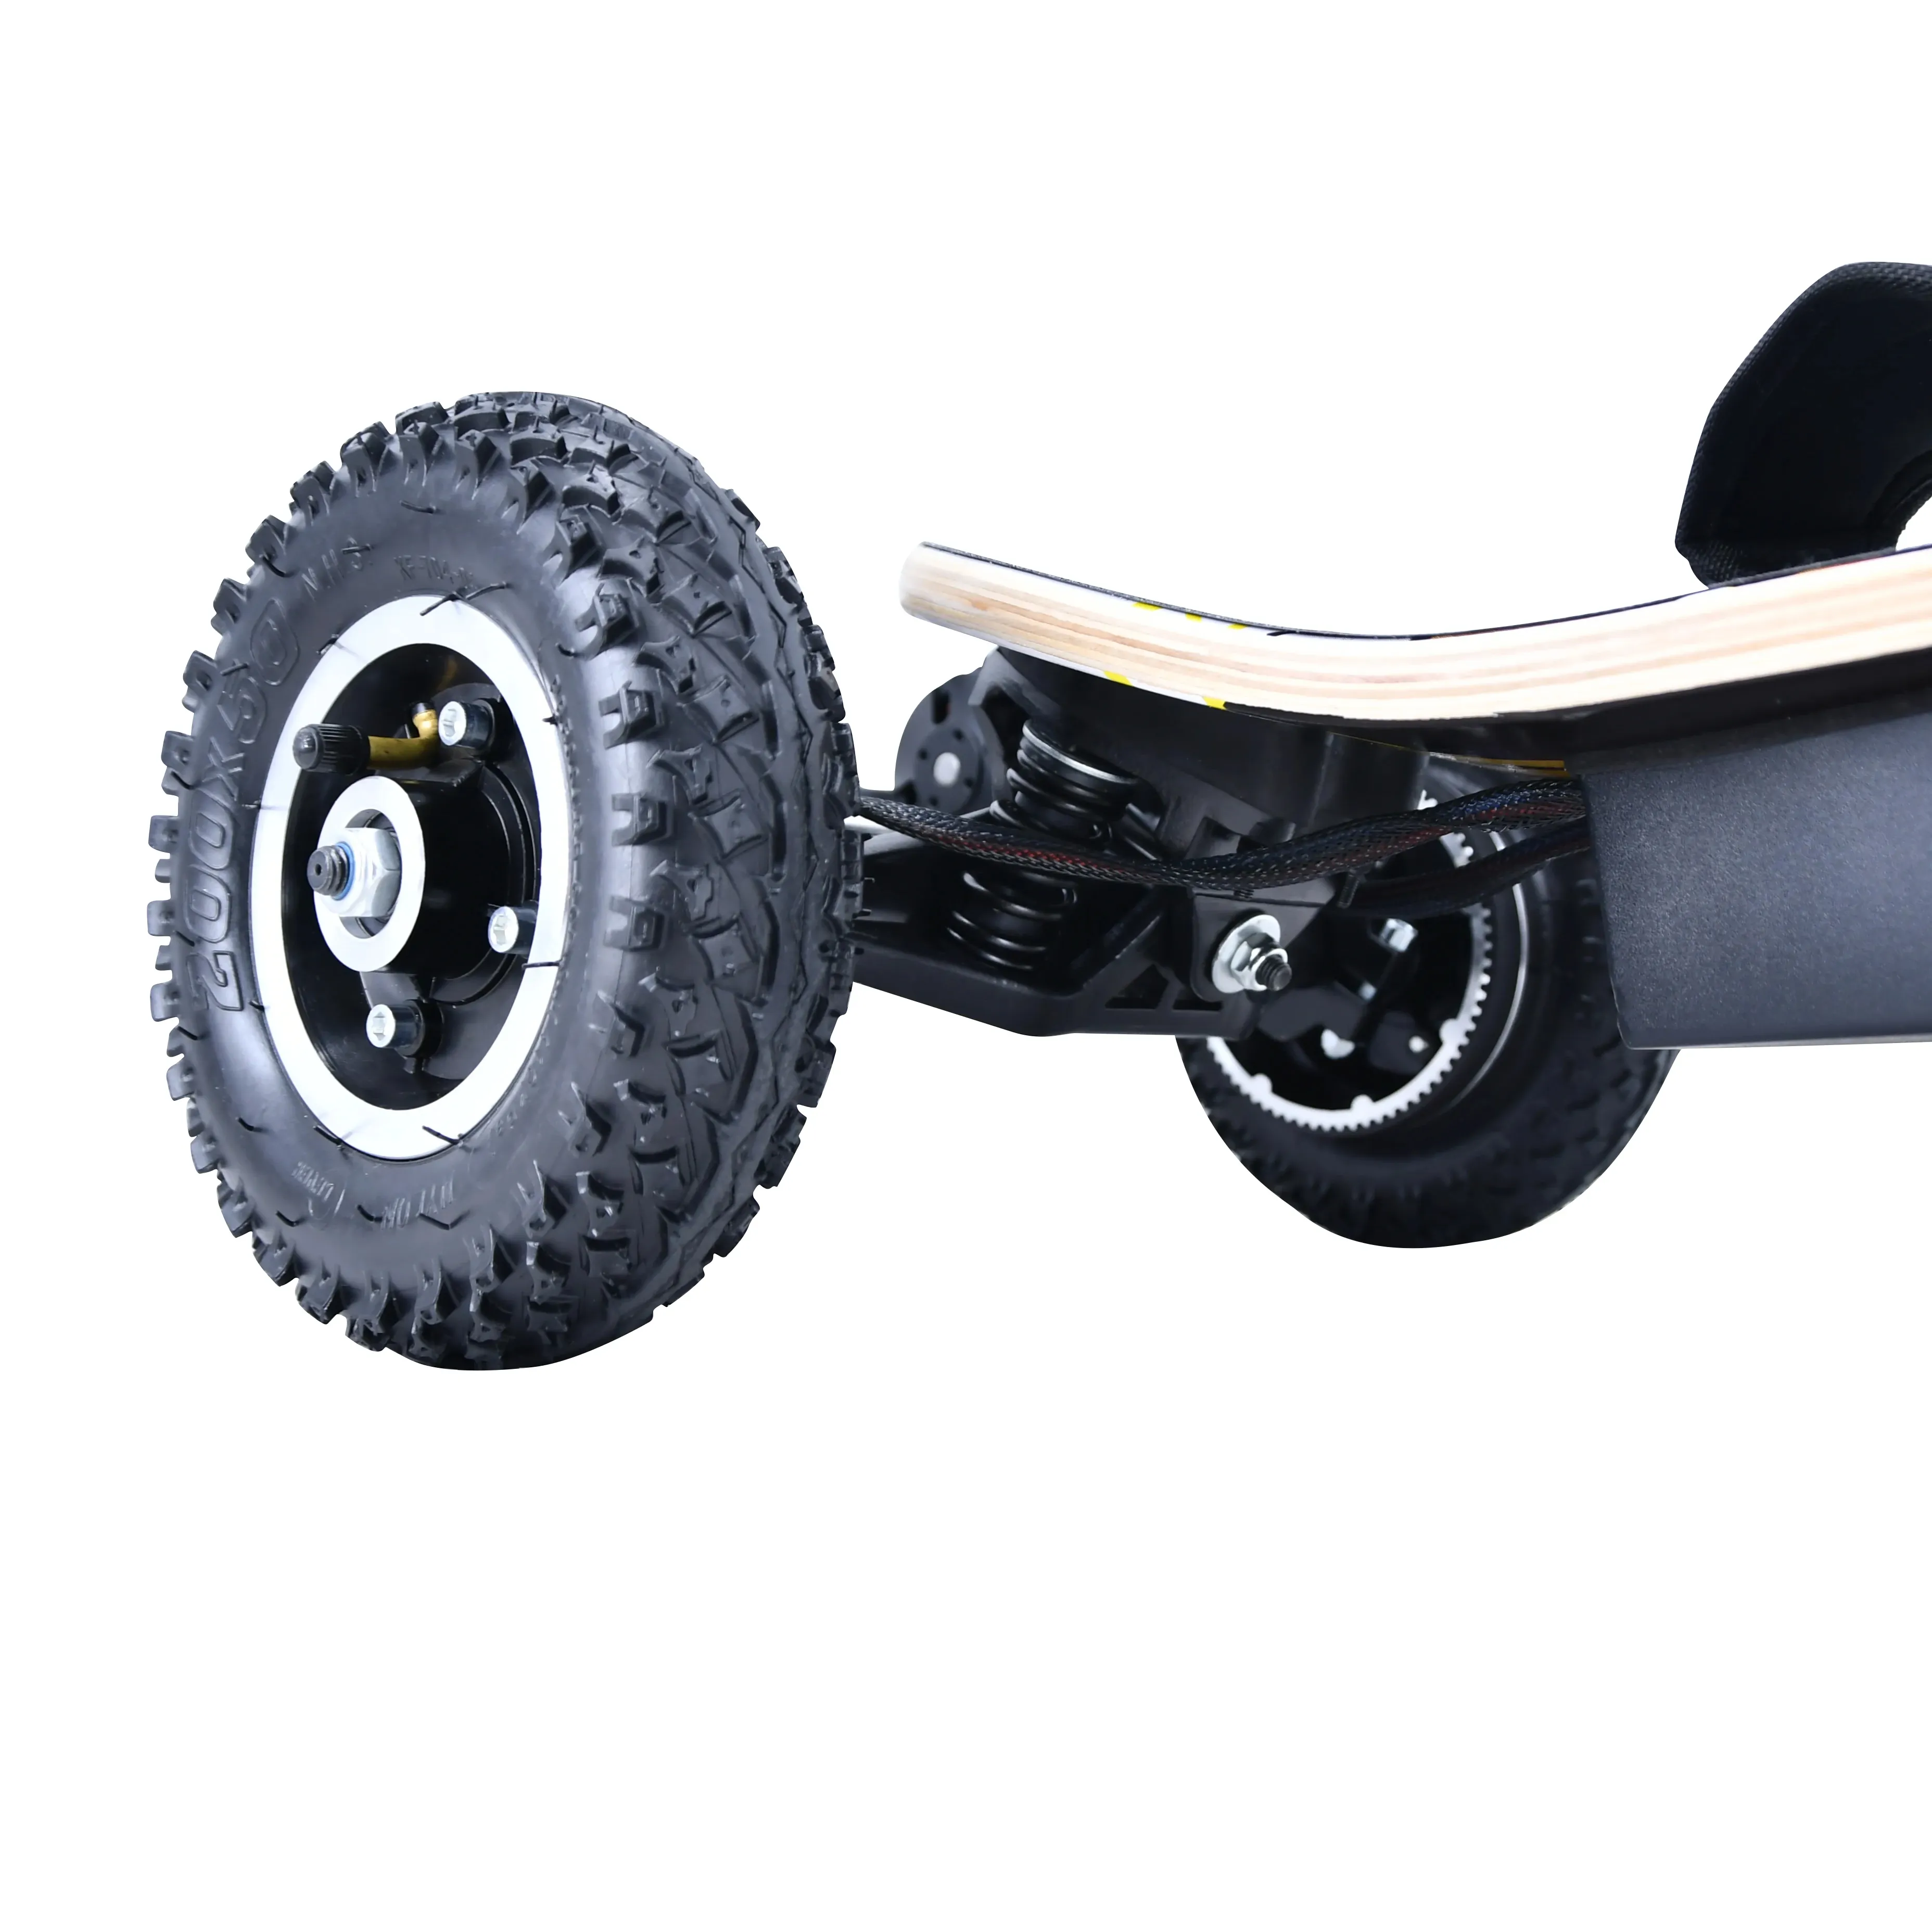 Trasmissione a cinghia a trasferimento termico fuoristrada pneumatici in gomma gonfiabile da 7.8 pollici per skateboard elettrico